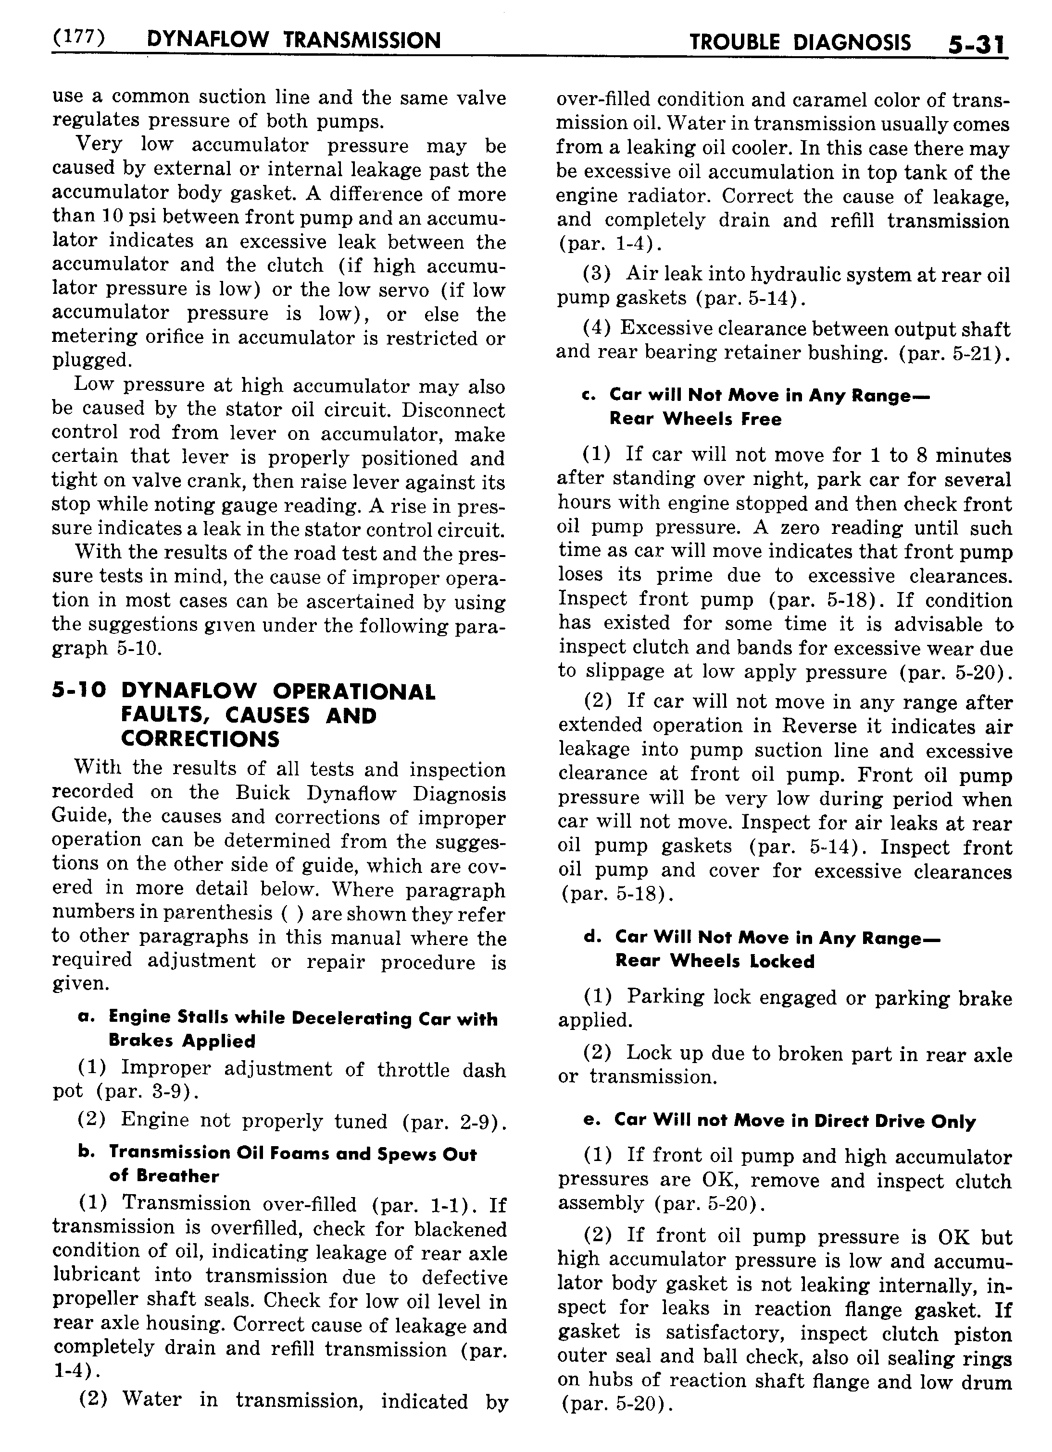 n_06 1956 Buick Shop Manual - Dynaflow-031-031.jpg